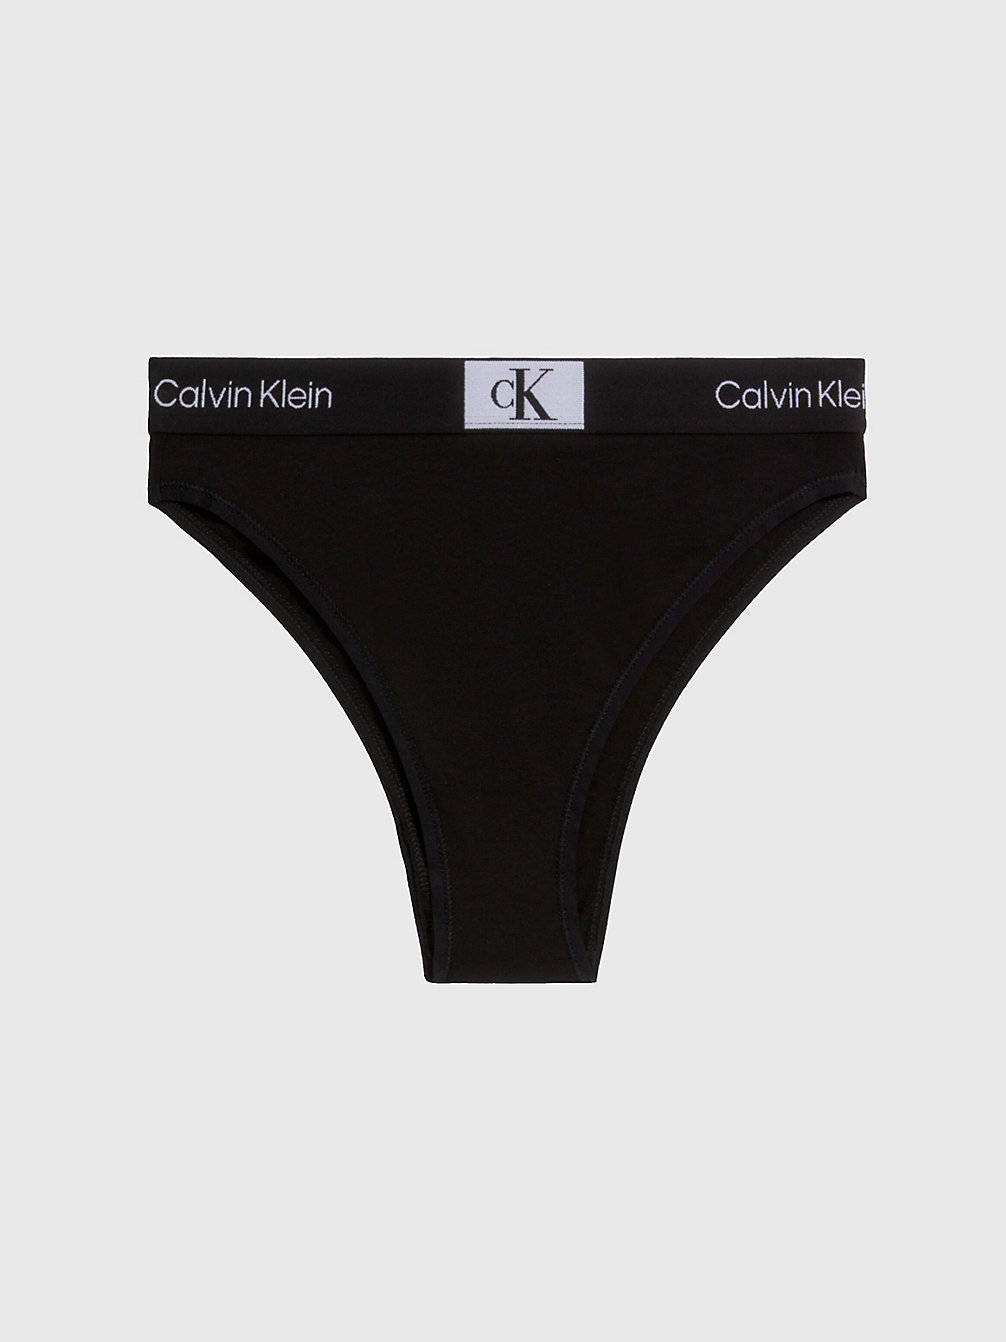 BLACK > Brazyliany Z Wysokim Stanem - Ck96 > undefined Kobiety - Calvin Klein